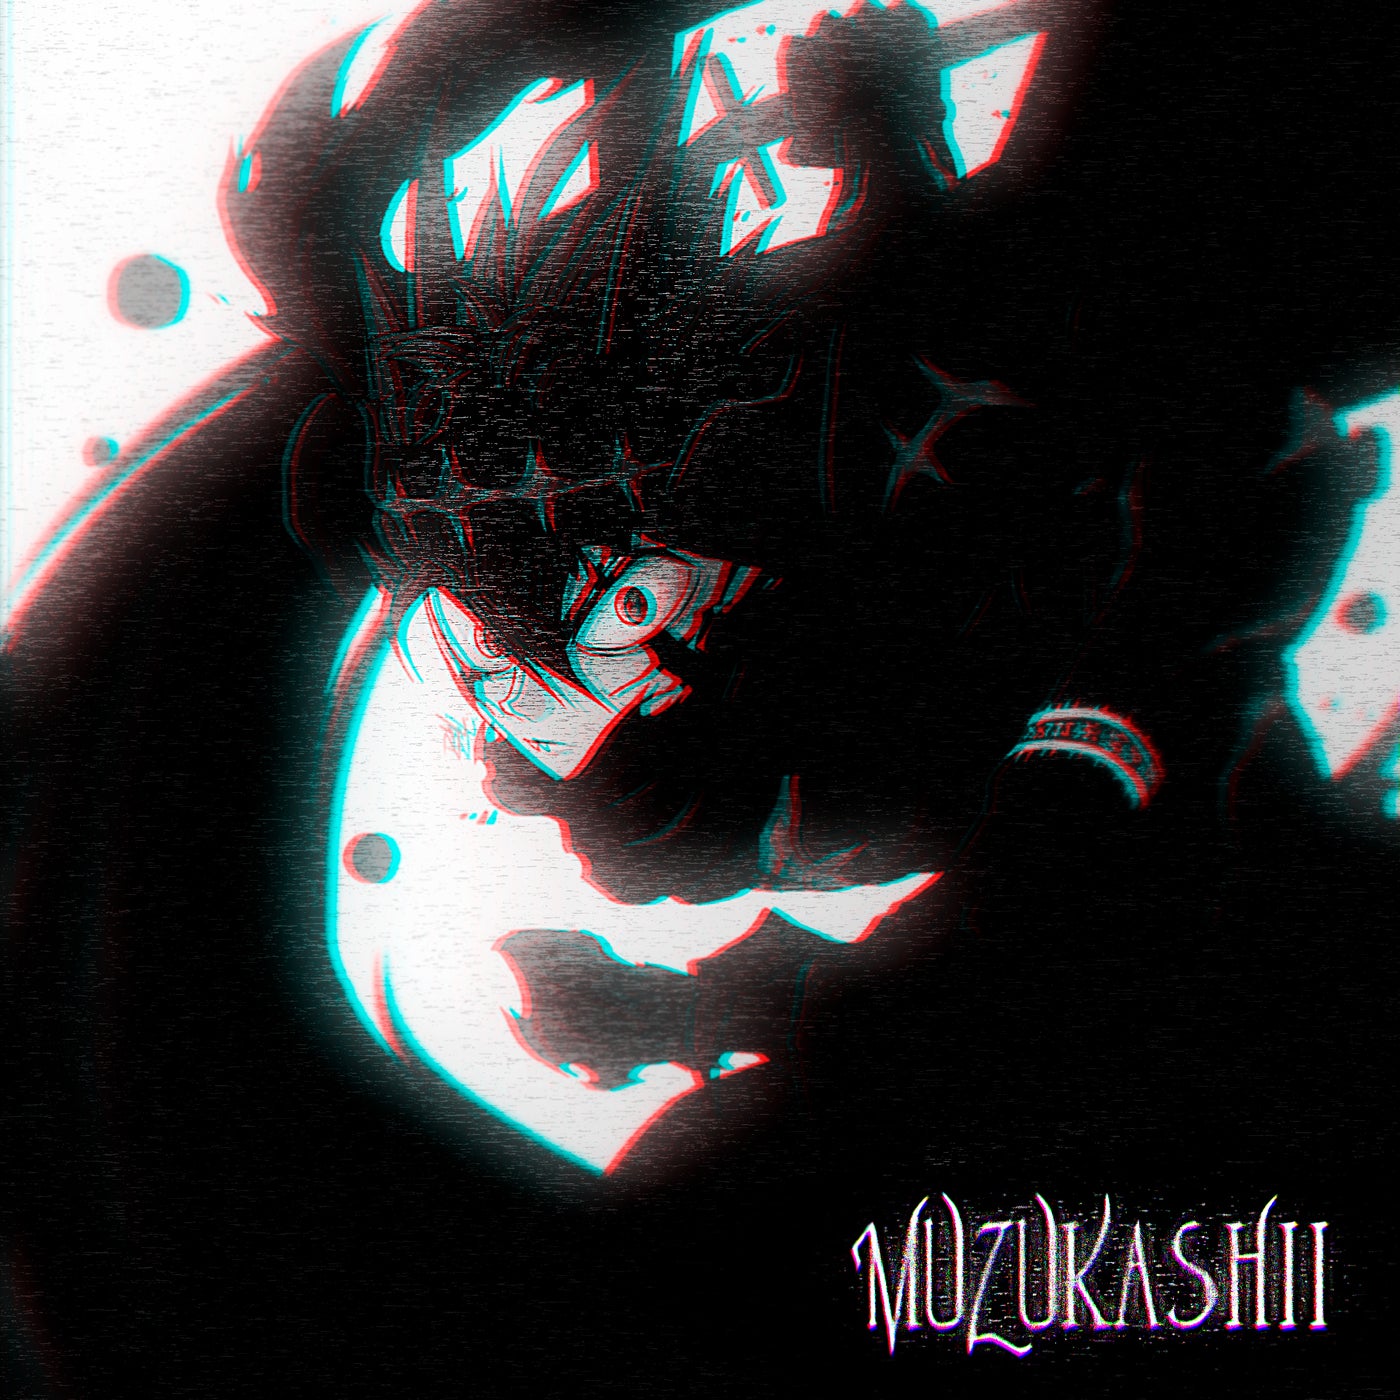 Muzukashii